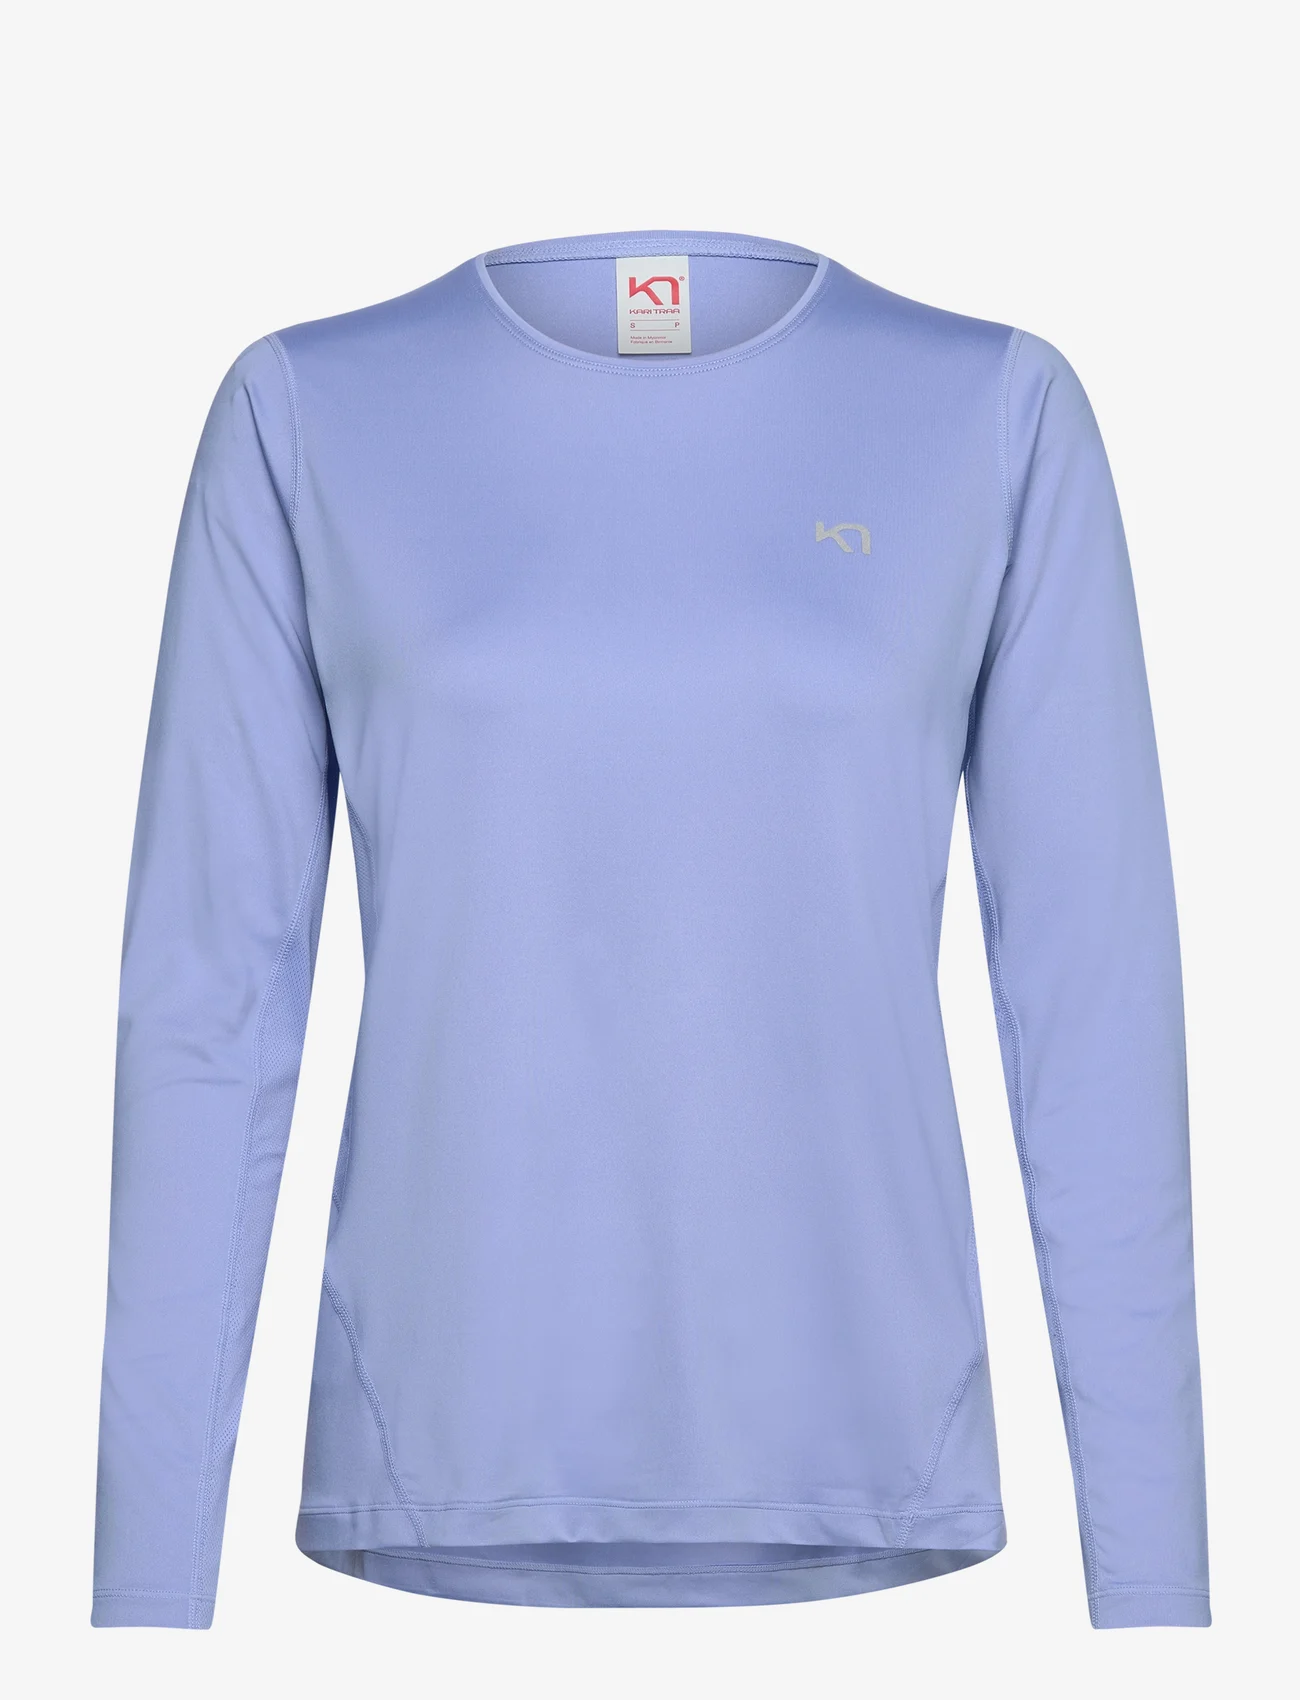 Kari Traa - NORA 2.0 LONG SLEEVE - långärmade tröjor - pastel light blue - 0